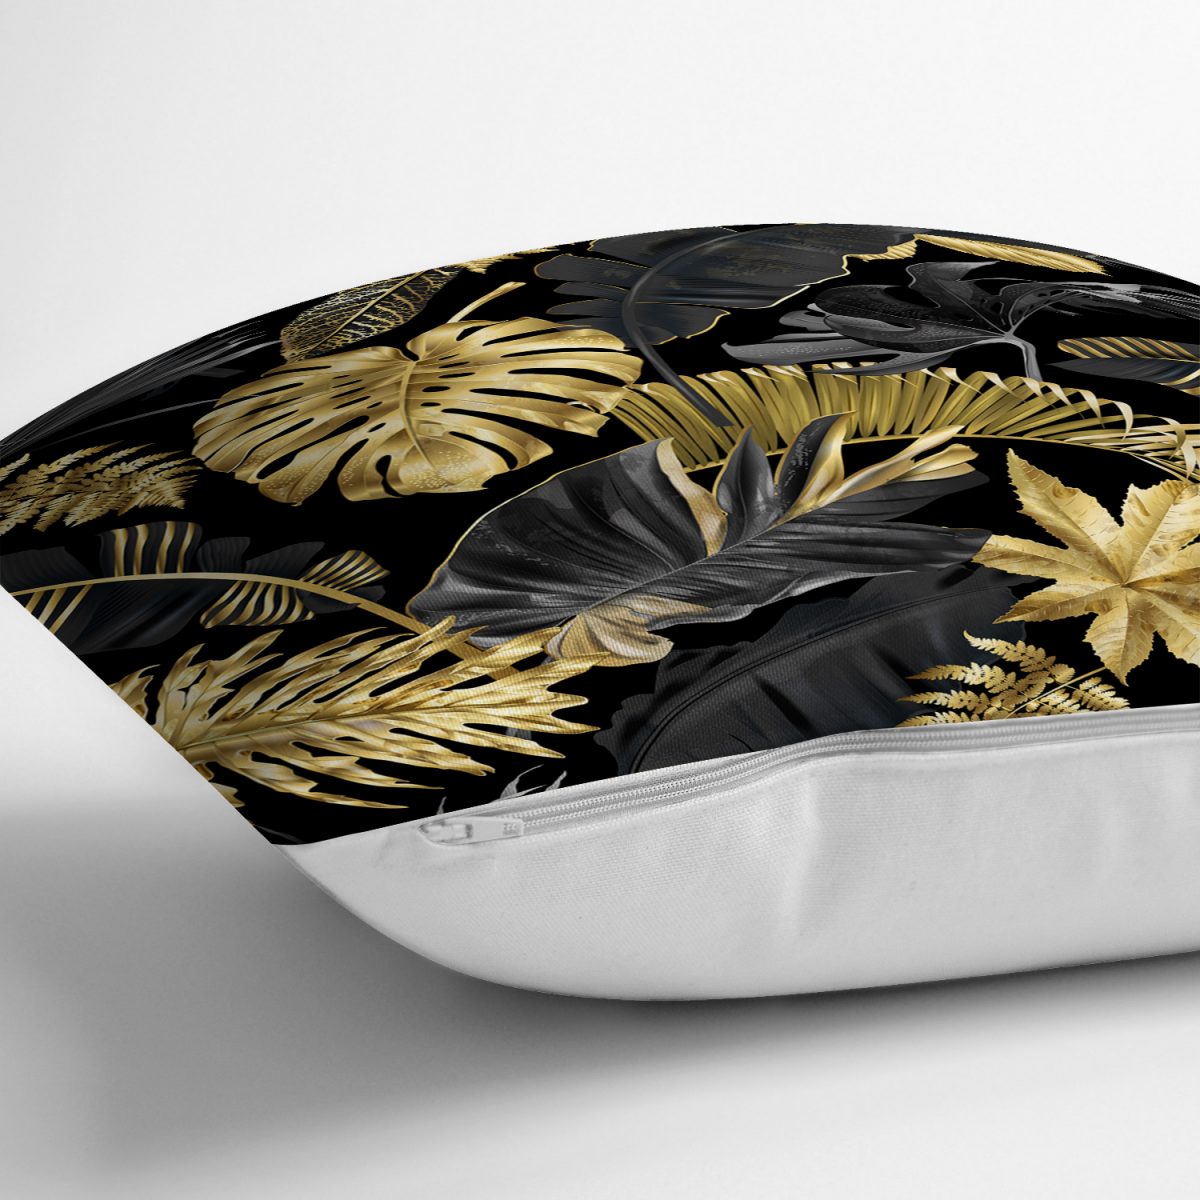 Siyah Zeminde Altın Yapraklar Desenli Dekoratif Yastık Kırlent Kılıfı Realhomes